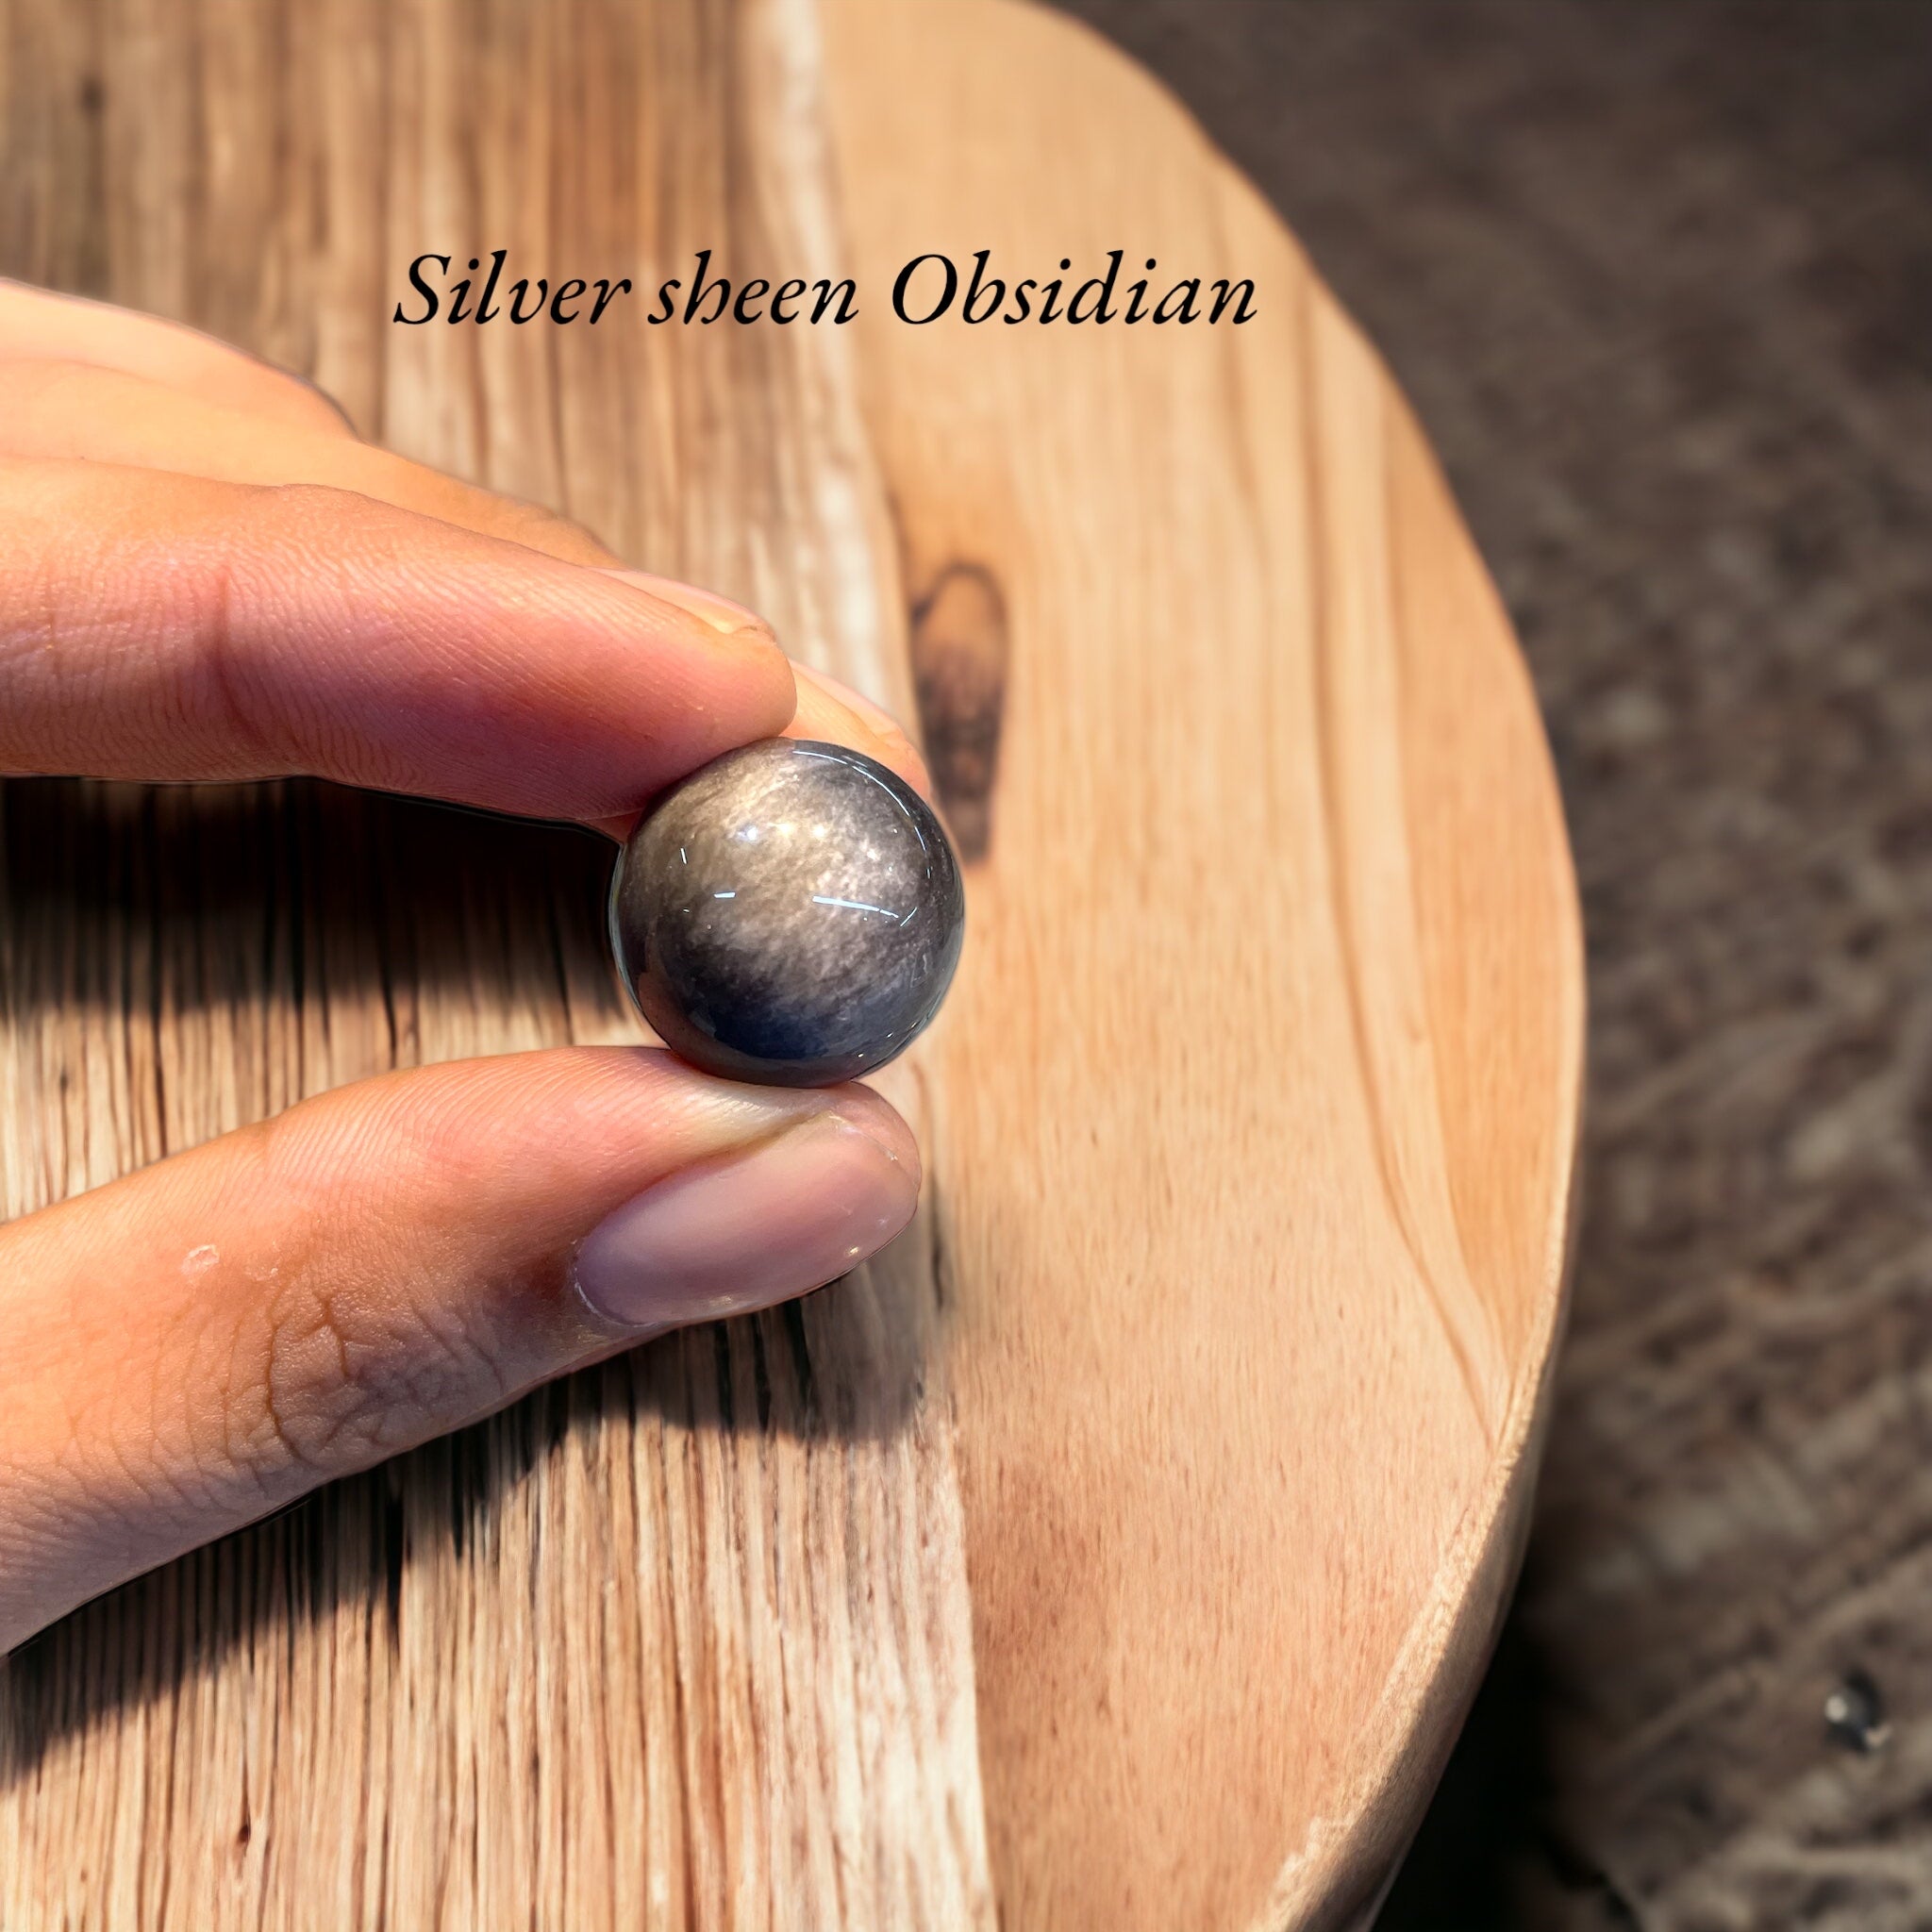 Silver sheen obsidian Sphere